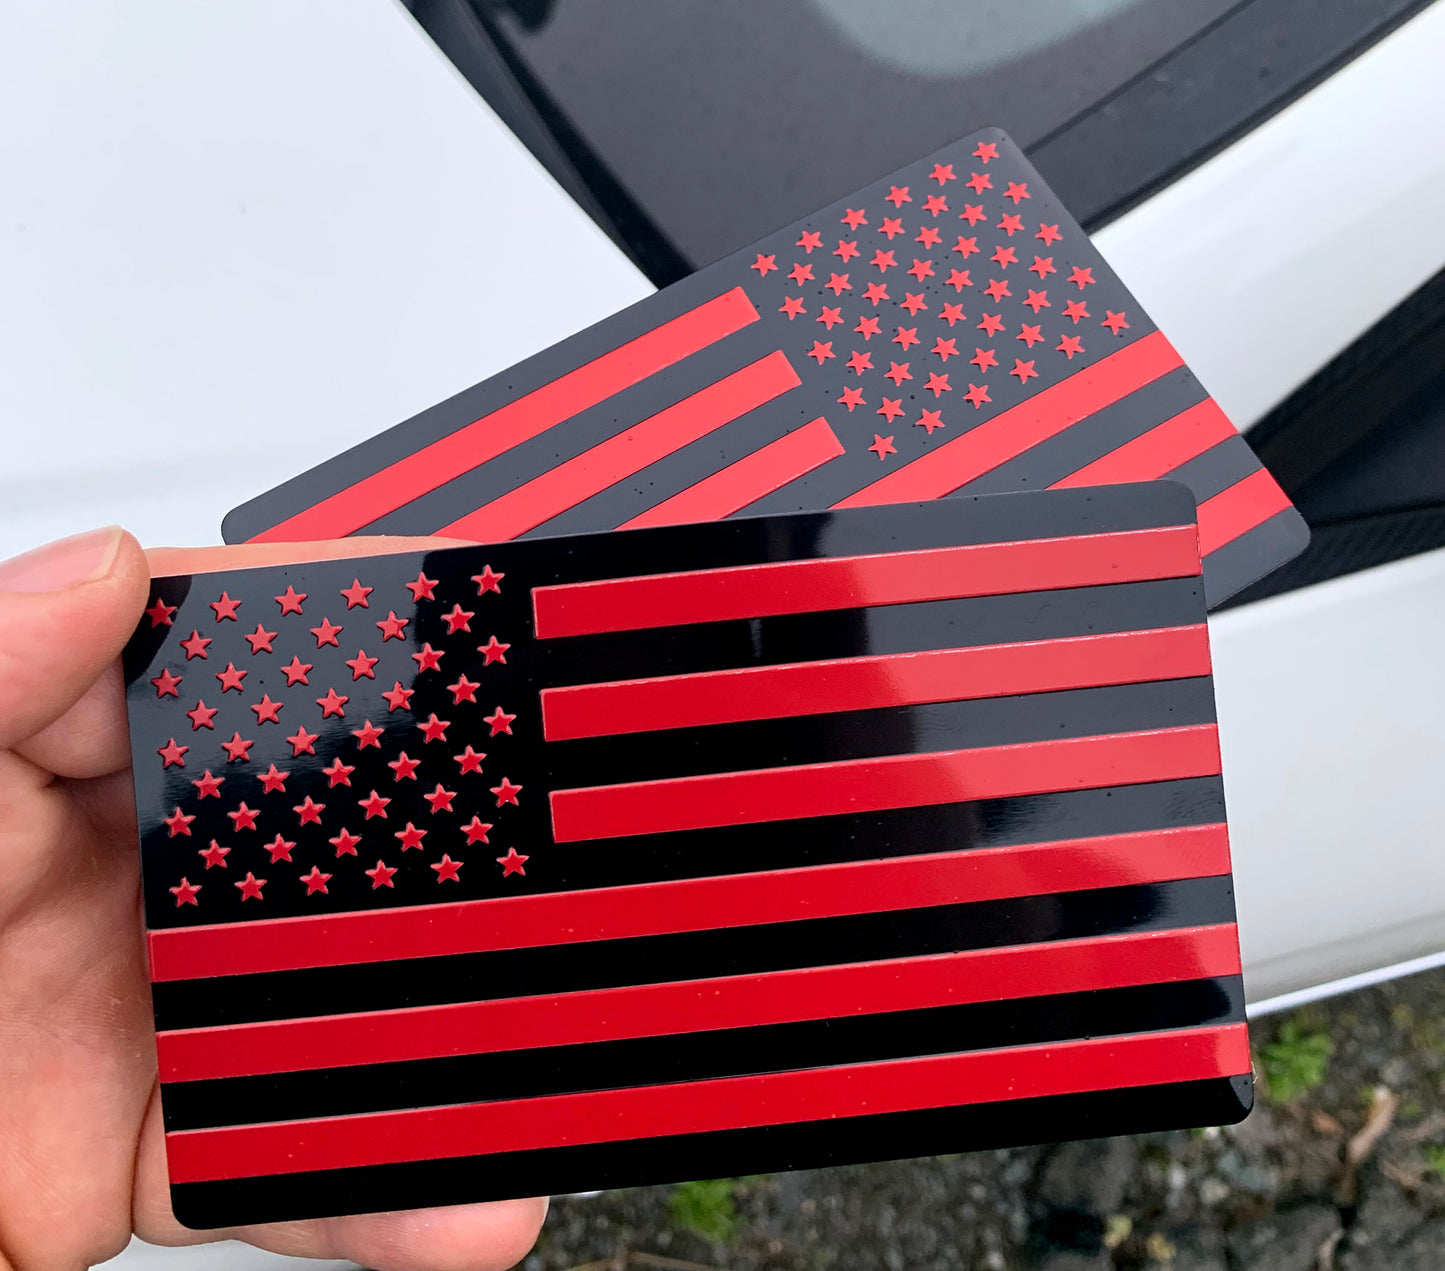 US Black Red Flag Fender Emblem for Cars, Trucks 5"x3" (Pair - Forward & Reverse)